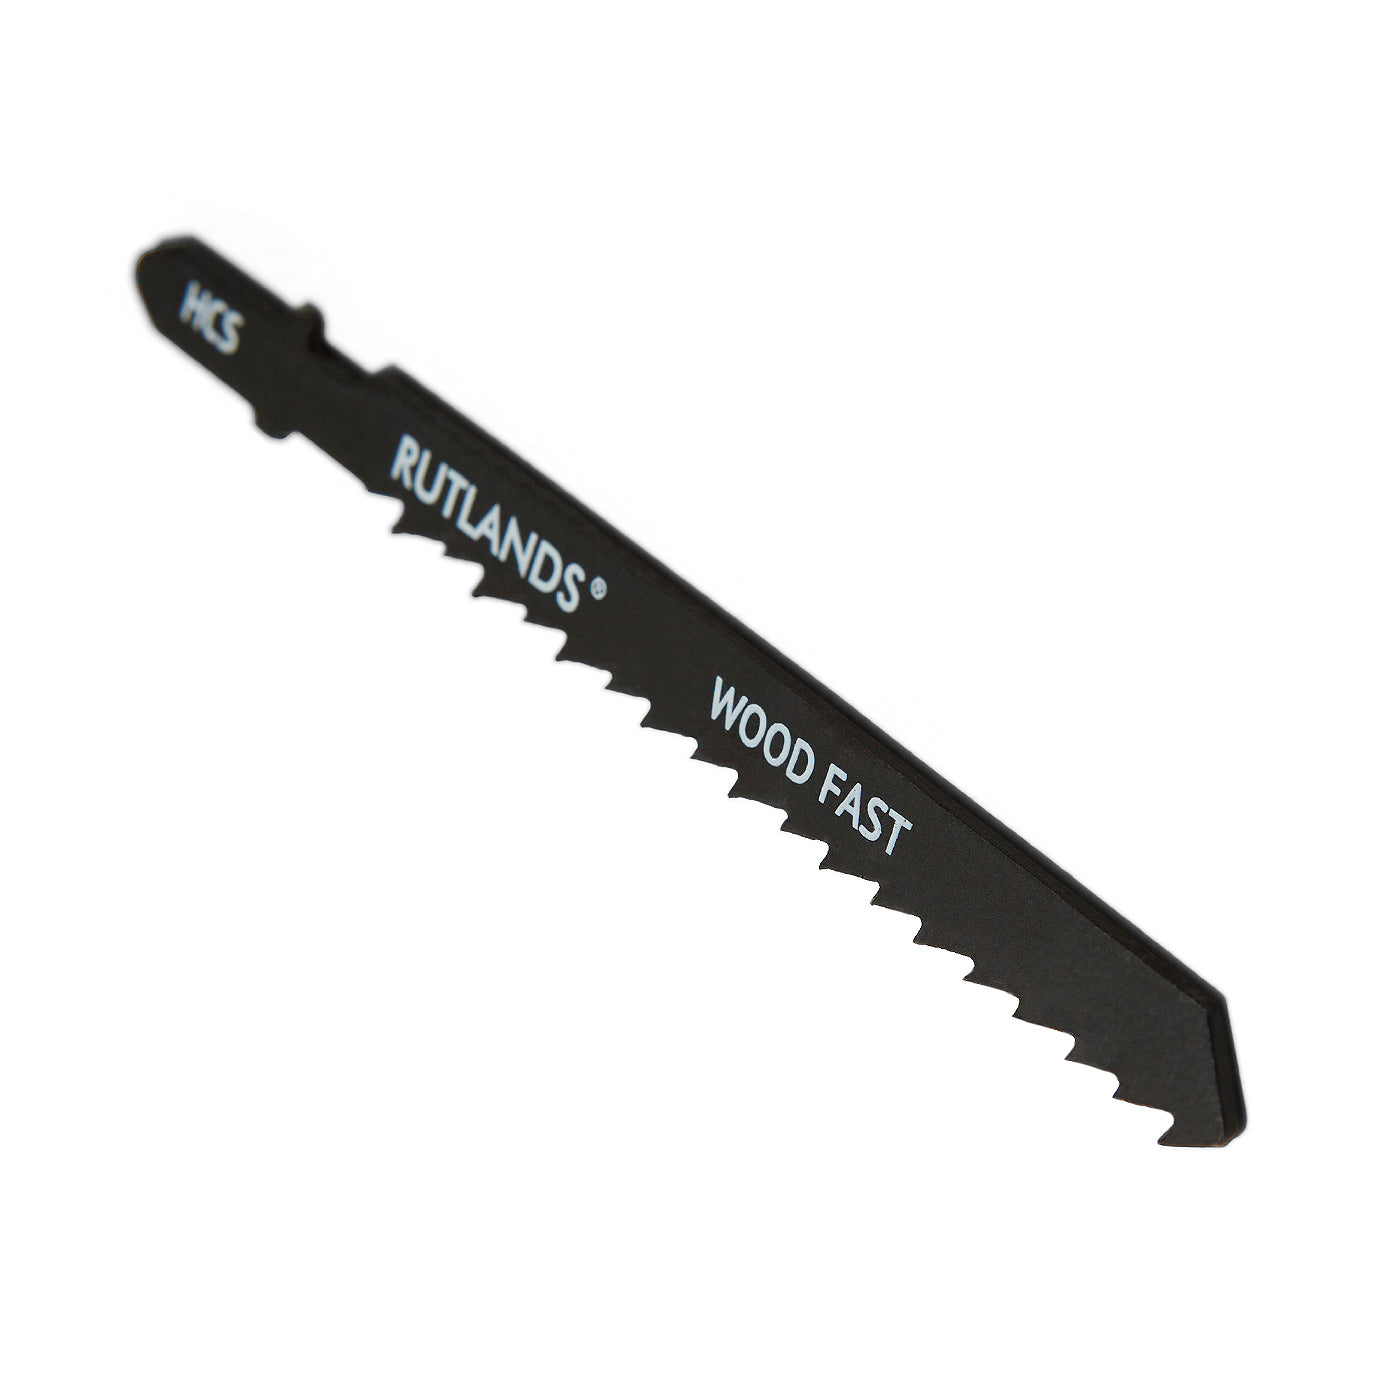 Jigsaw Blades - Wood Fast Cut - T144D - Pack of 5